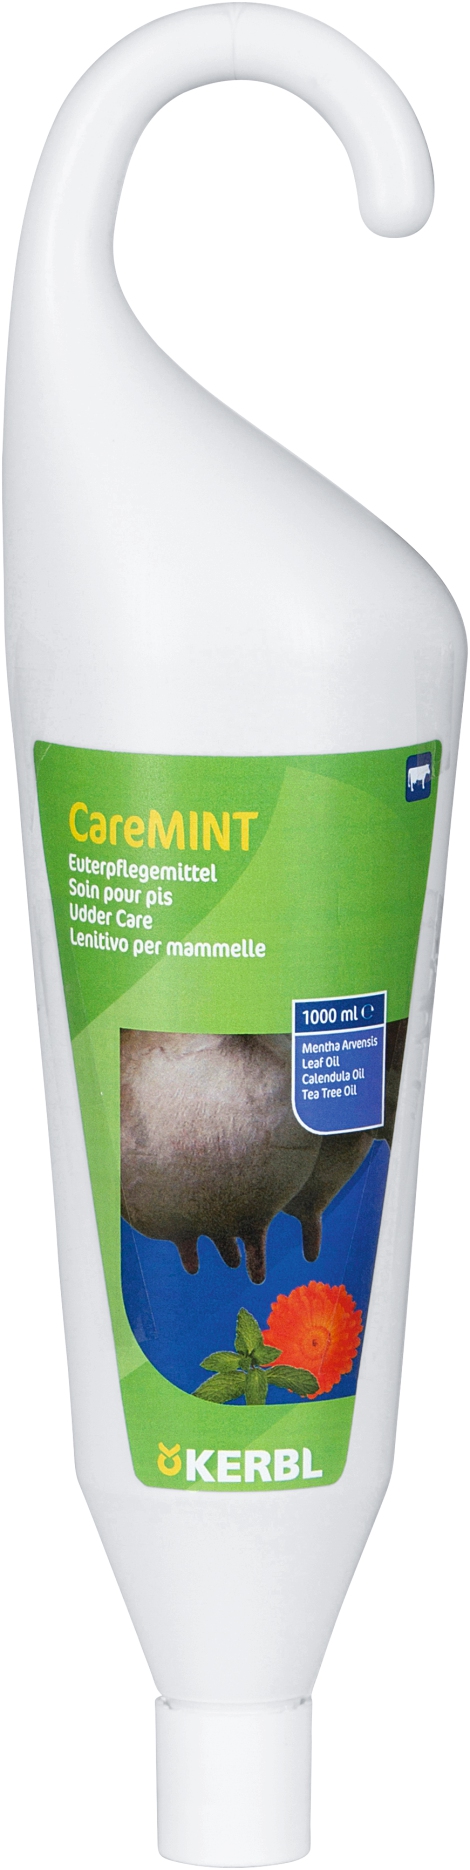 Euterpflegemittel CareMINT 1 l